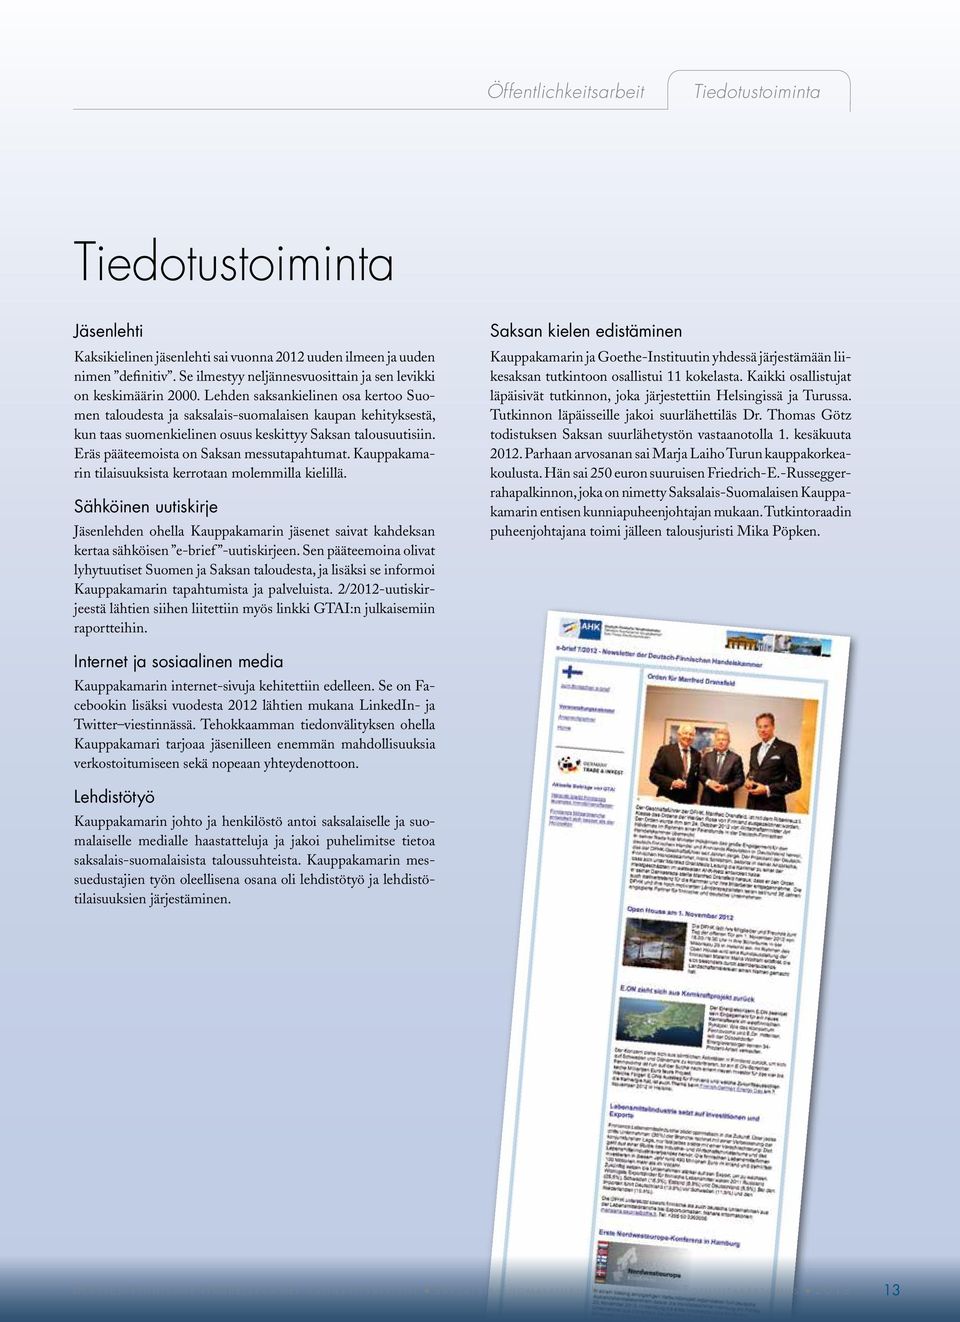 Lehden saksankielinen osa kertoo Suomen taloudesta ja saksalais-suomalaisen kaupan kehityksestä, kun taas suomenkielinen osuus keskittyy Saksan talousuutisiin.